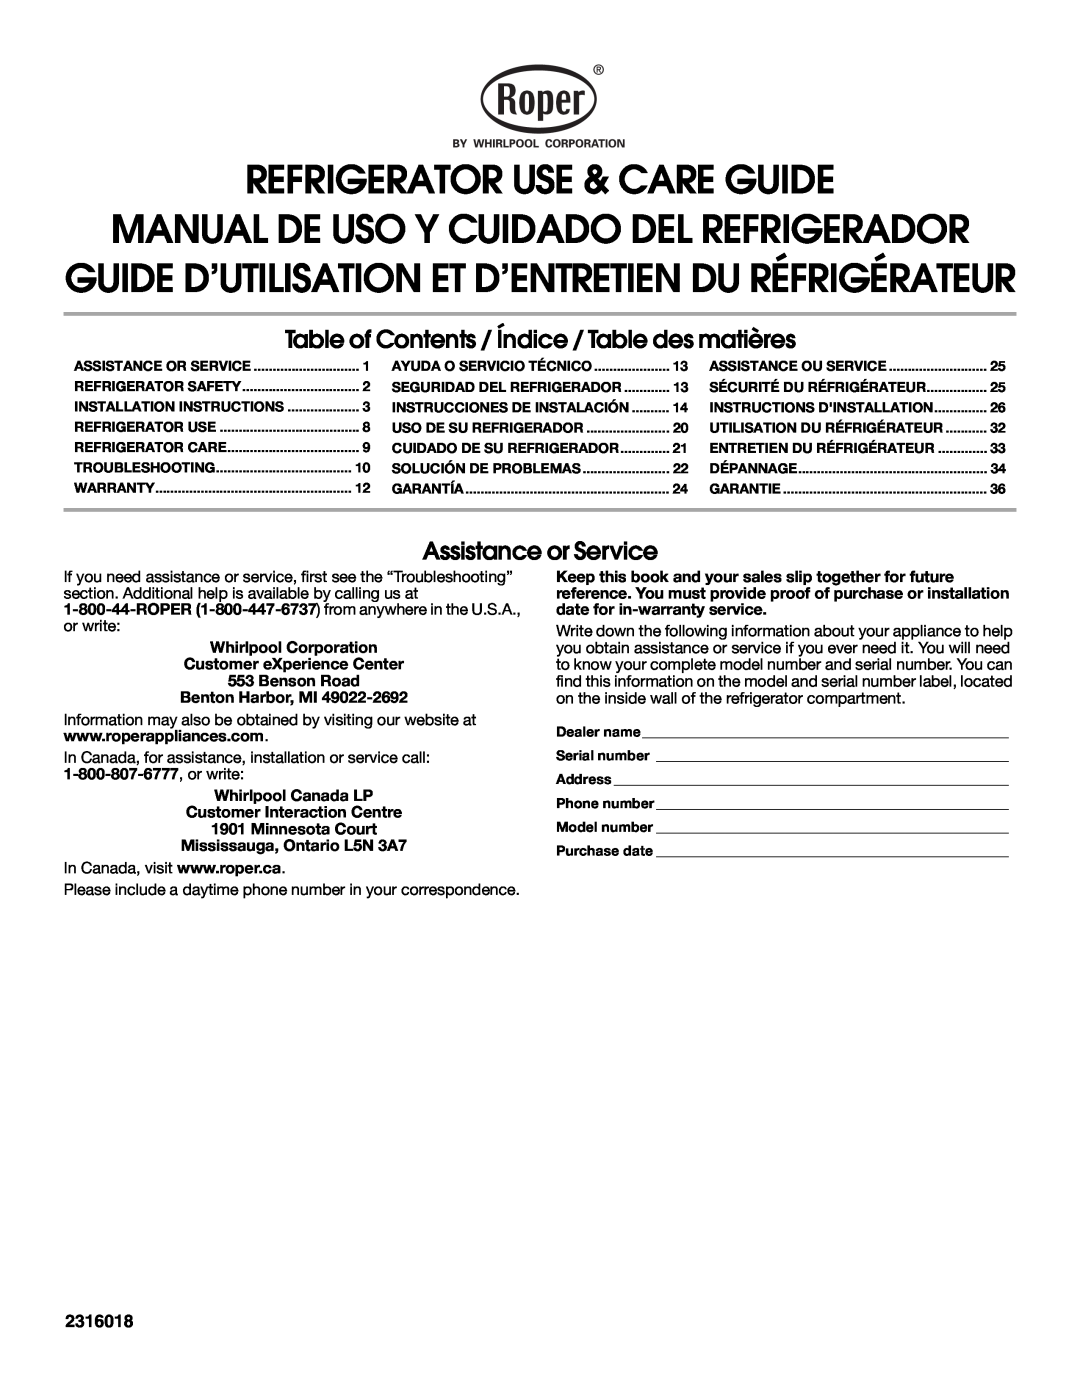 Whirlpool RT14BKXSQ00 warranty Refrigerator Use & Care Guide, Manual De Uso Y Cuidado Del Refrigerador, 2316018 